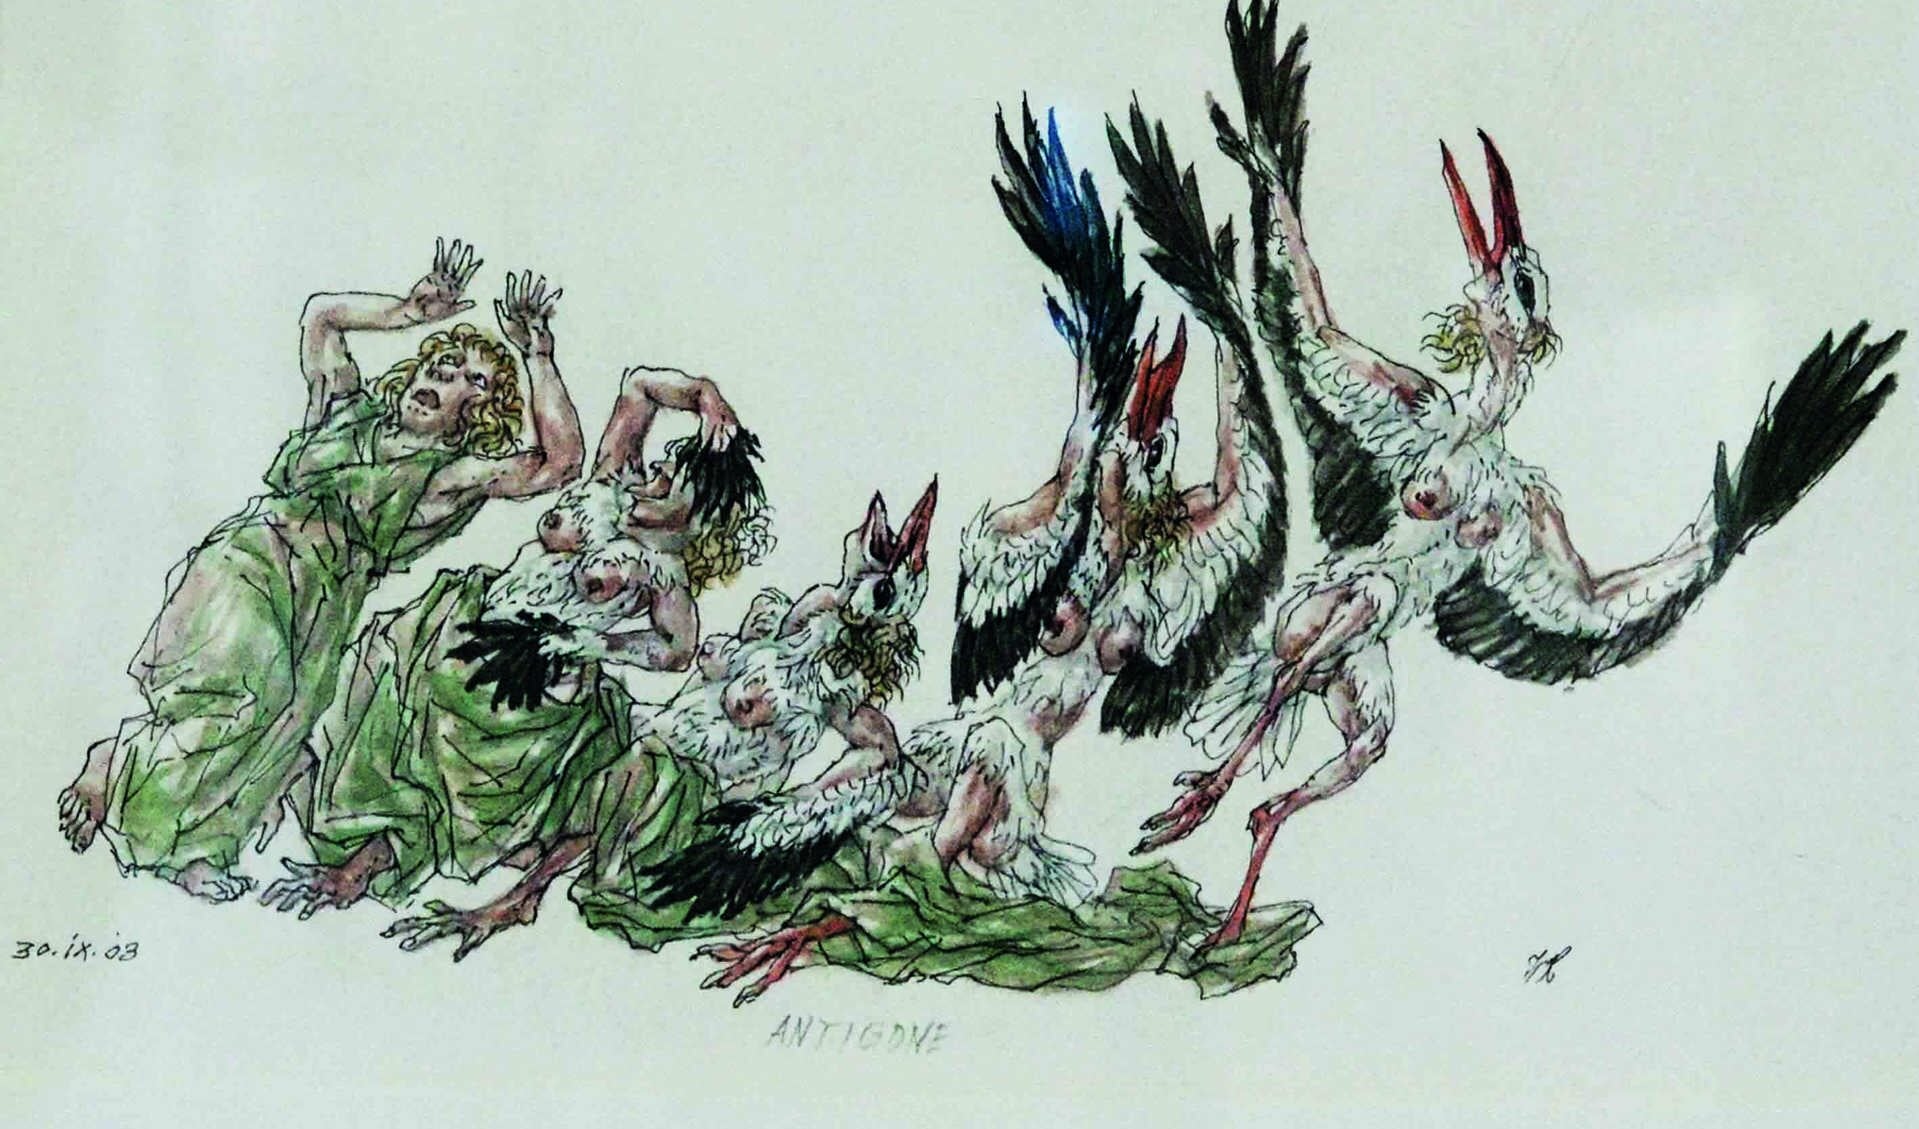 Het werk 'Antigone' - pen, inkt en aquarel van Peter Vos - is te zien op de zomerexpositie in Het Petershuis